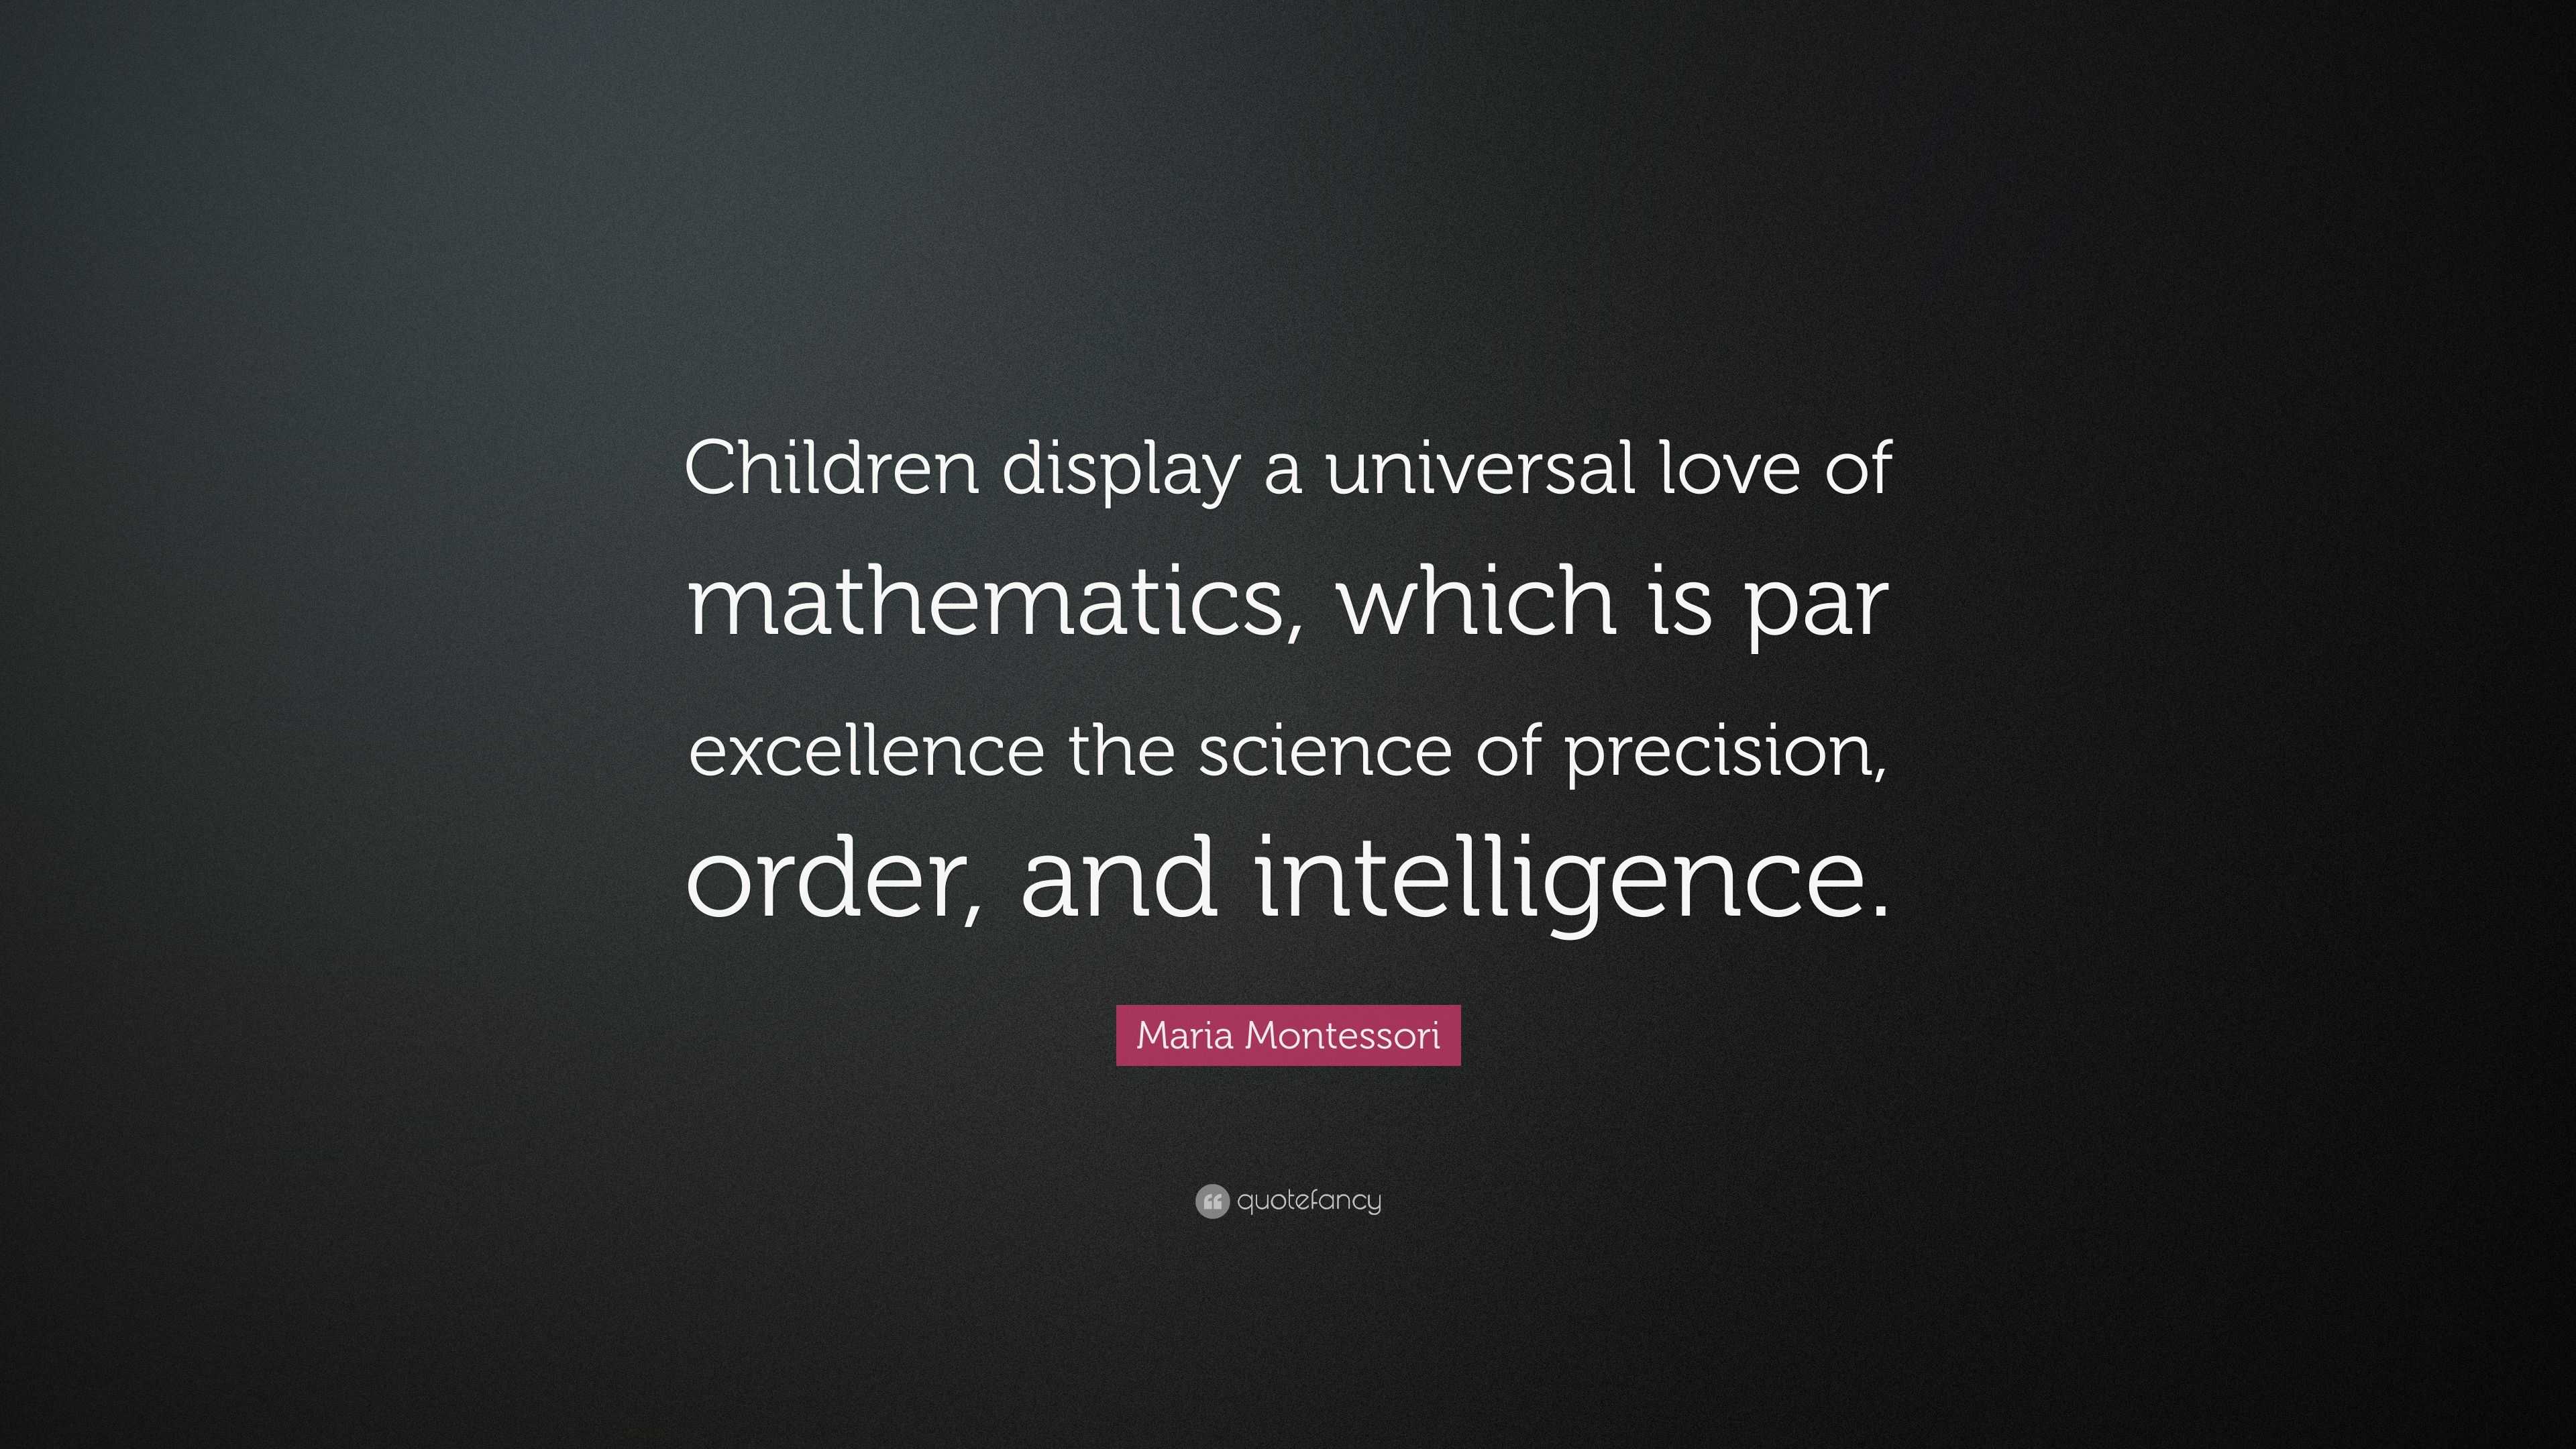 Maria Montessori Quote: “Children display a universal love of